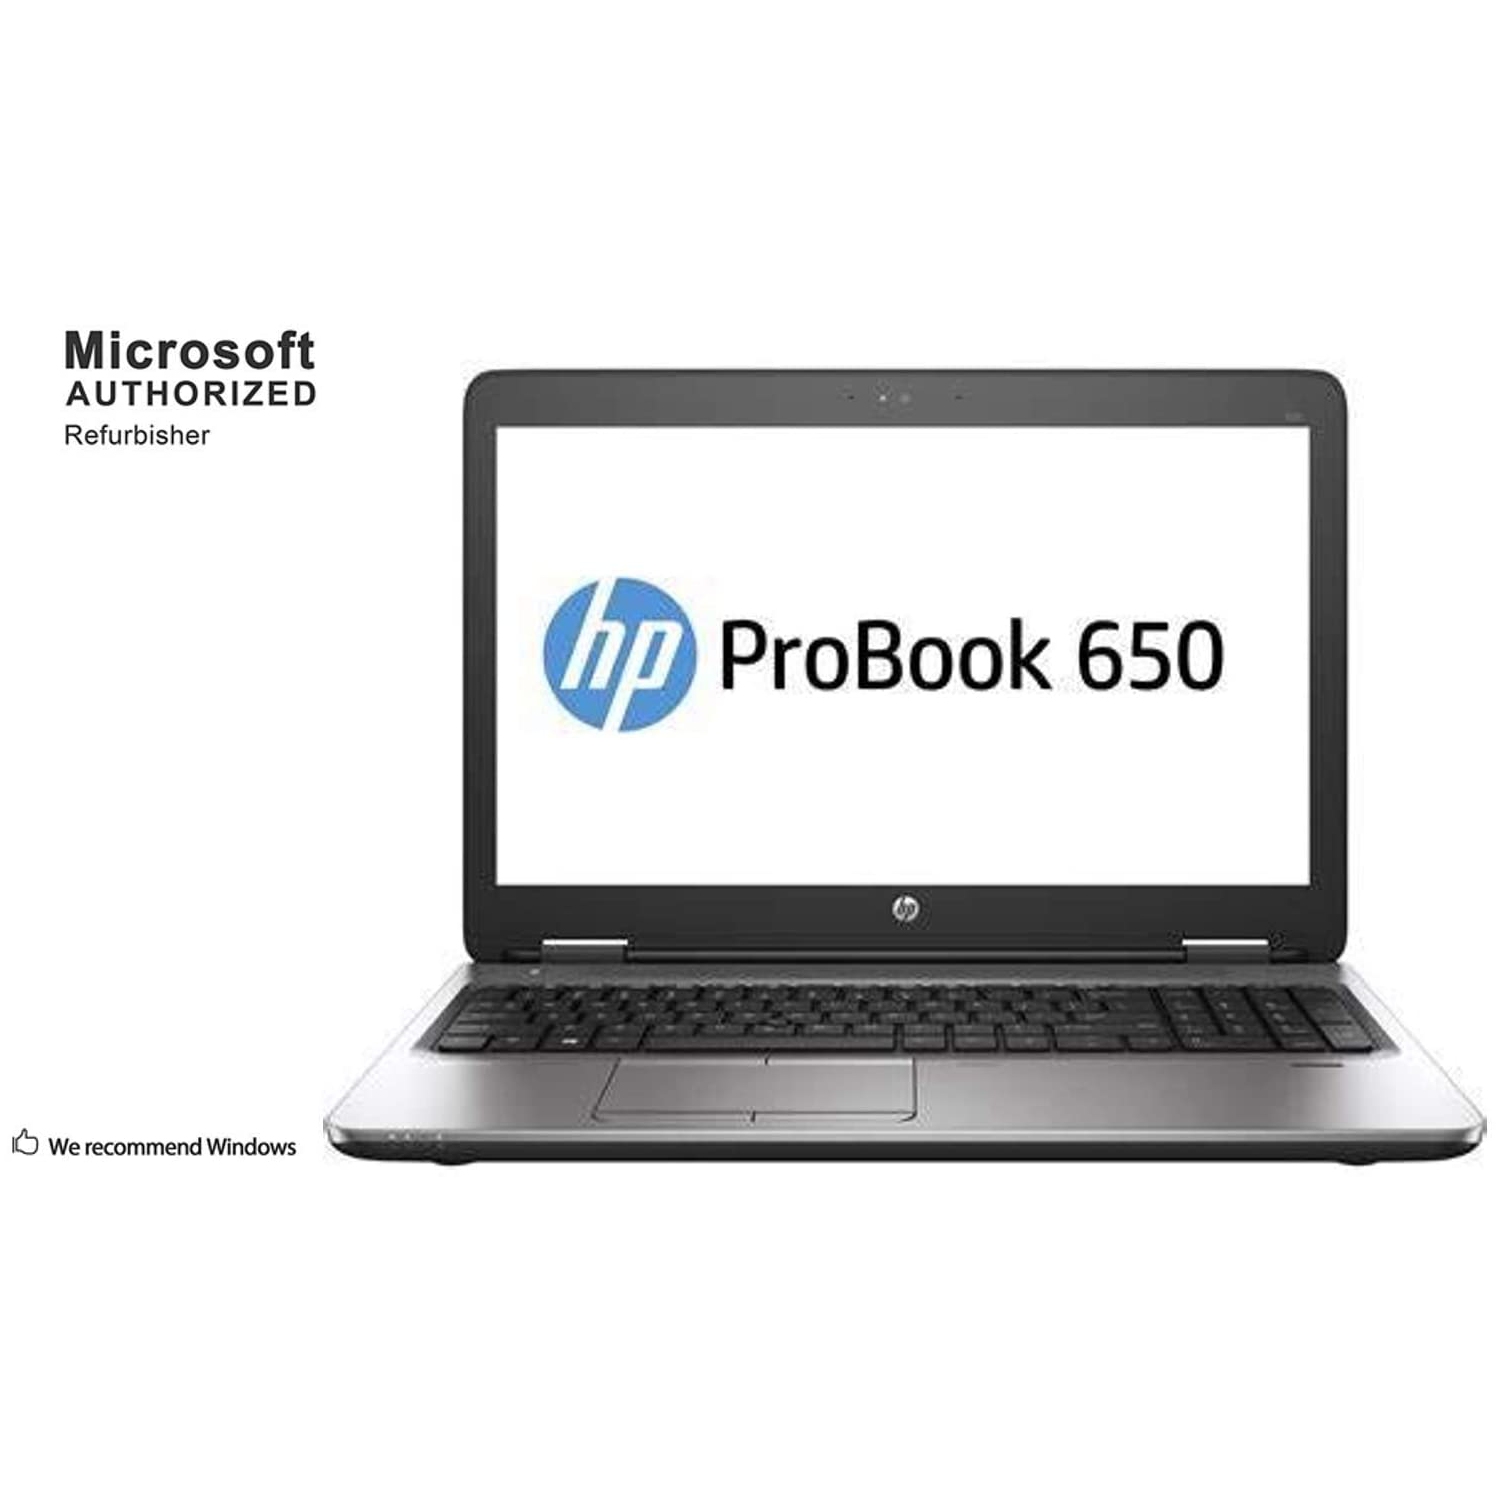 Refurbished (Good) - HP ProBook 650 G2 15.6" Laptop - Intel Core i5 6th Gen (i5-6300U) | 8GB RAM DDR3 | 256GB SSD | Windows 10 Pro